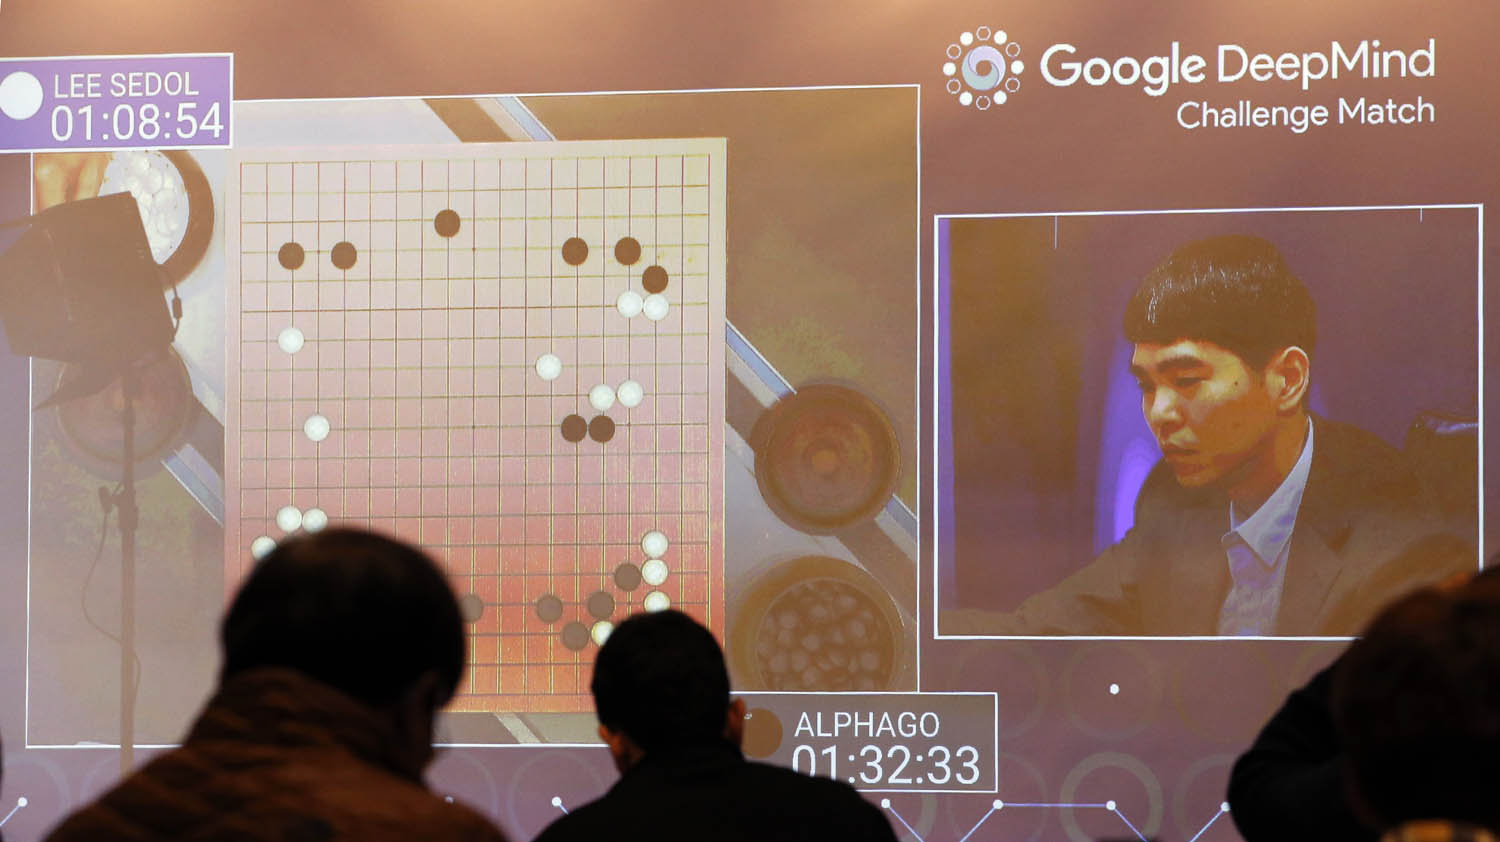 الكوري لي سيدول في مواجهة مع الذكاء الاصطناعي على لعبة غو عام 2016